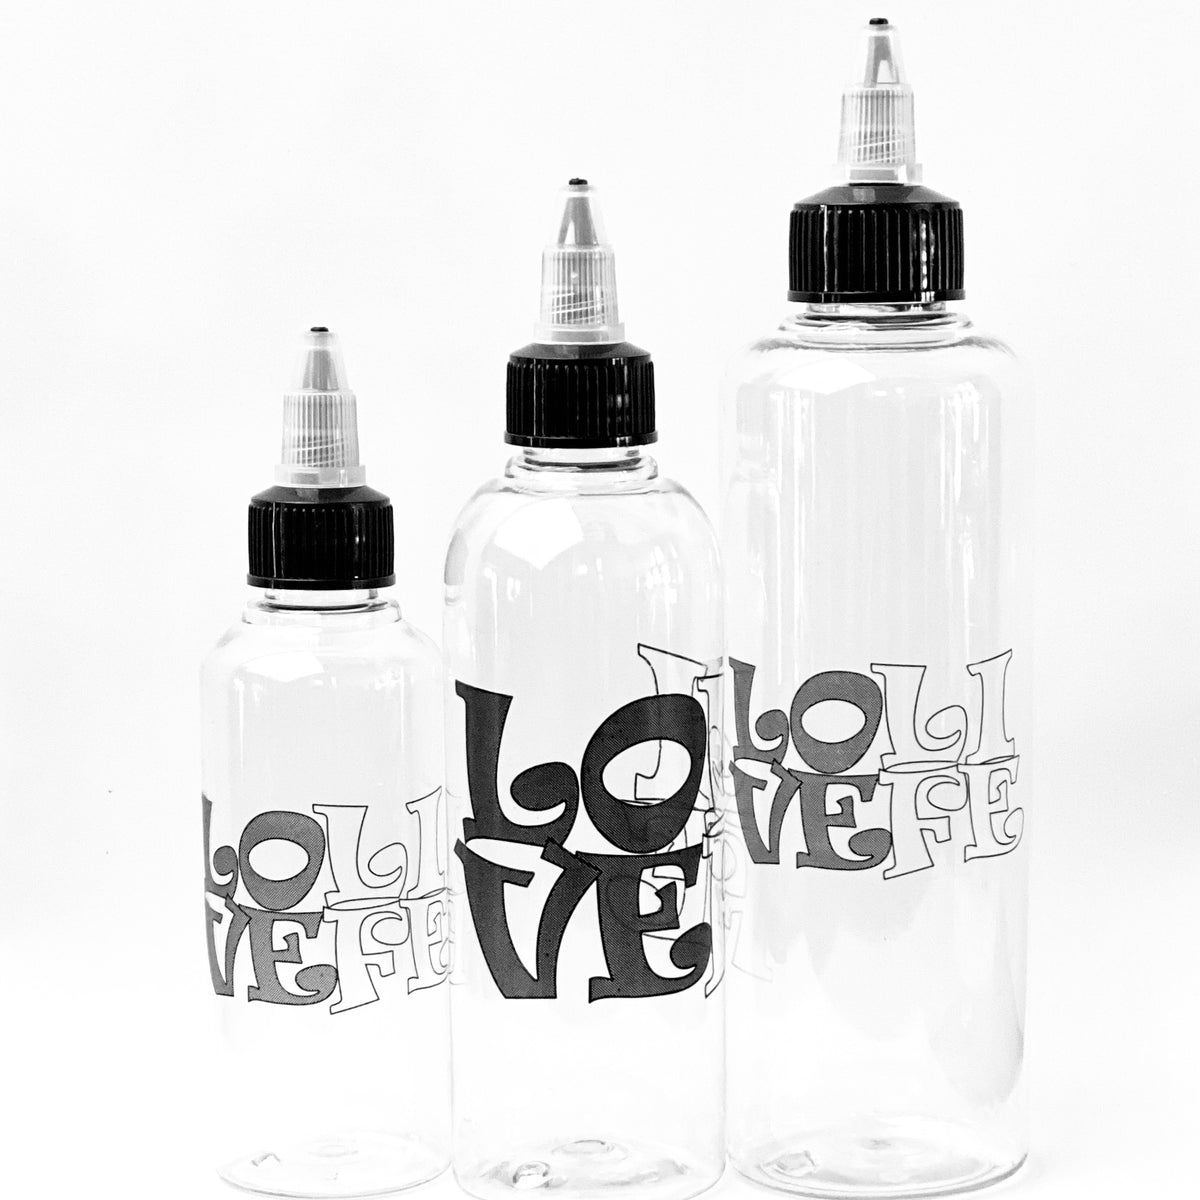 100 Pcs Mini Squeeze Bottles - Plastic Squirt Bottles for Liquids